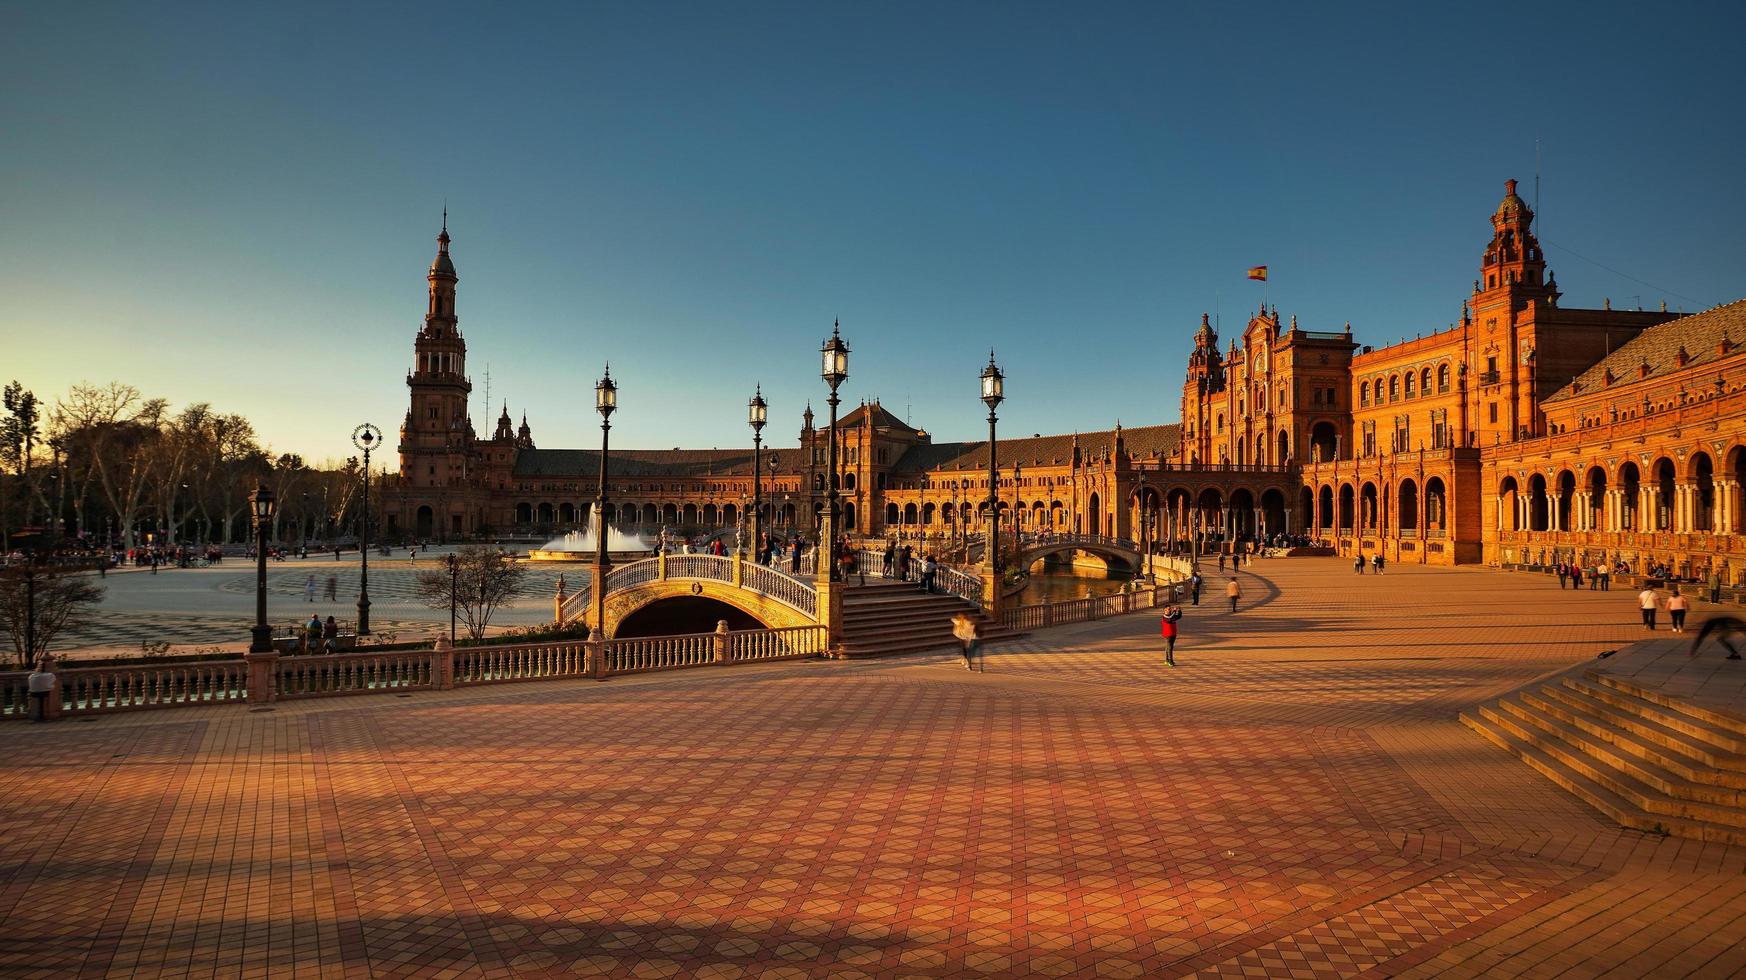 séville, espagne - 20 février 2020 - touristes se promenant sur la plaza de espana avec des détails architecturaux au coucher du soleil dans le centre-ville de séville. photo